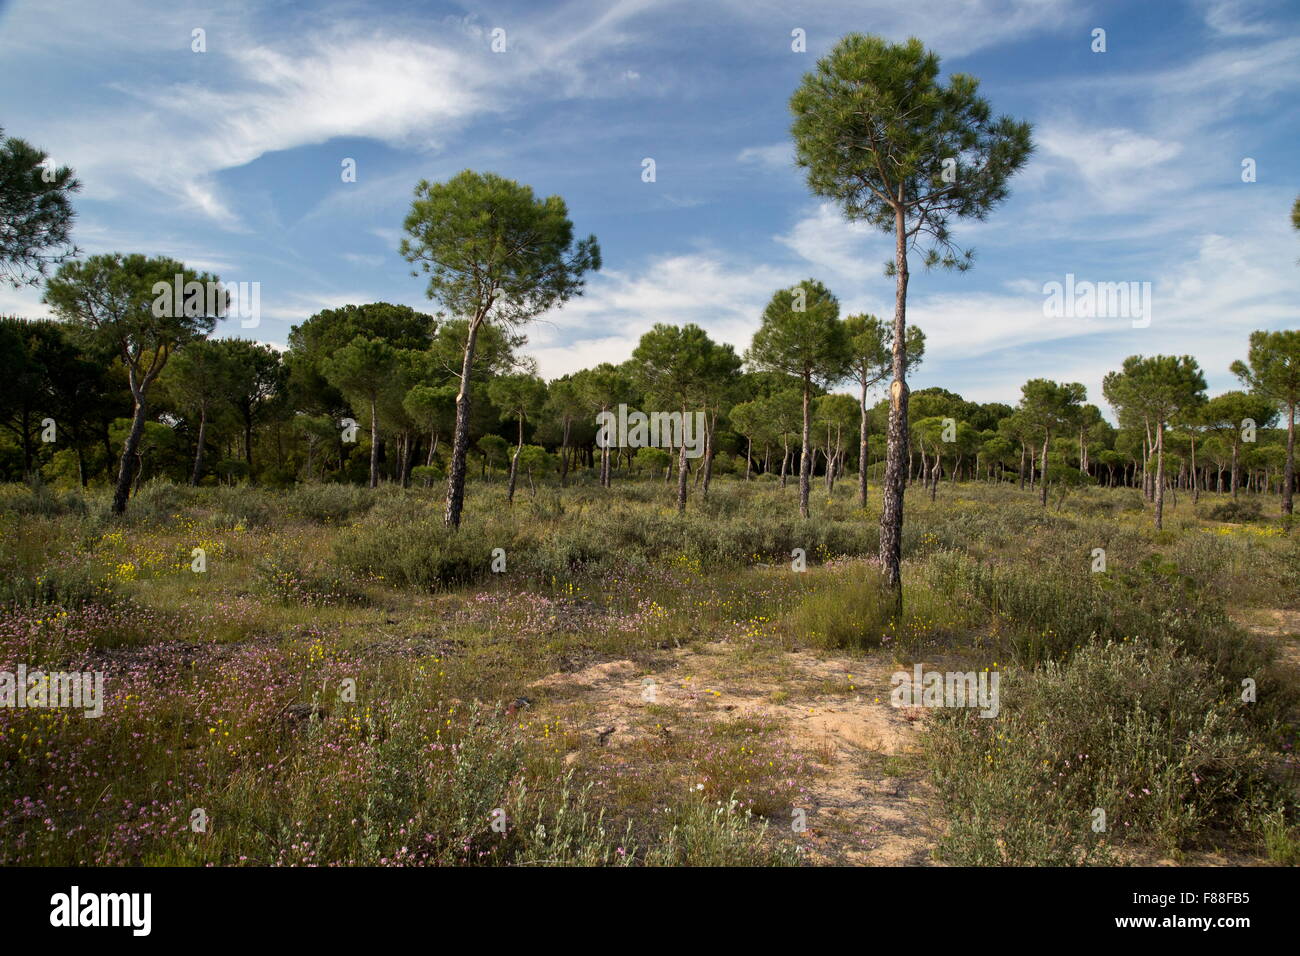 Forêt de pins parasol ouvert sur les dunes de sable, au sud-ouest de l'Espagne. Banque D'Images